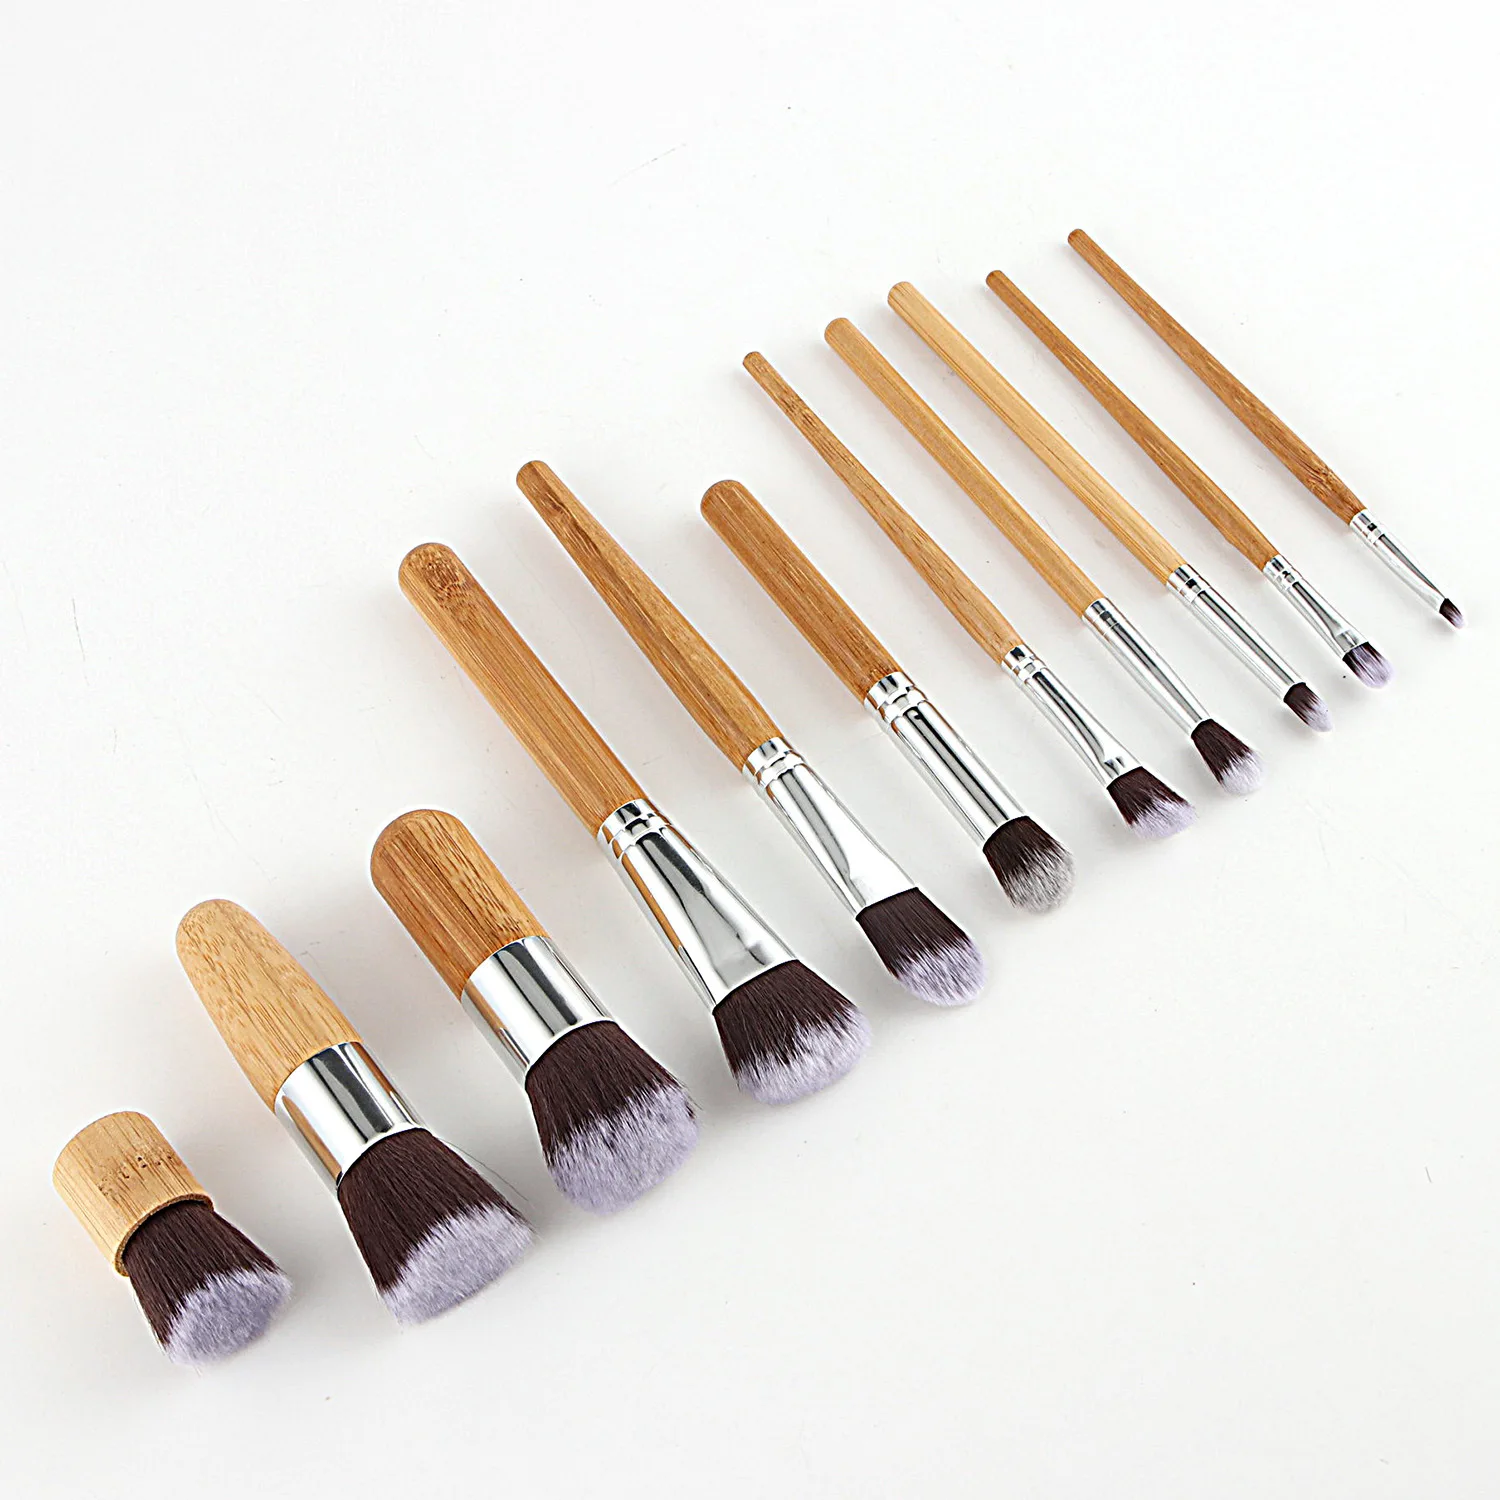 Горячая 11 шт. набор кистей для макияжа с ручками из натурального бамбука высокое качество набор для смешивания основы косметический набор для макияжа с хлопковой сумкой